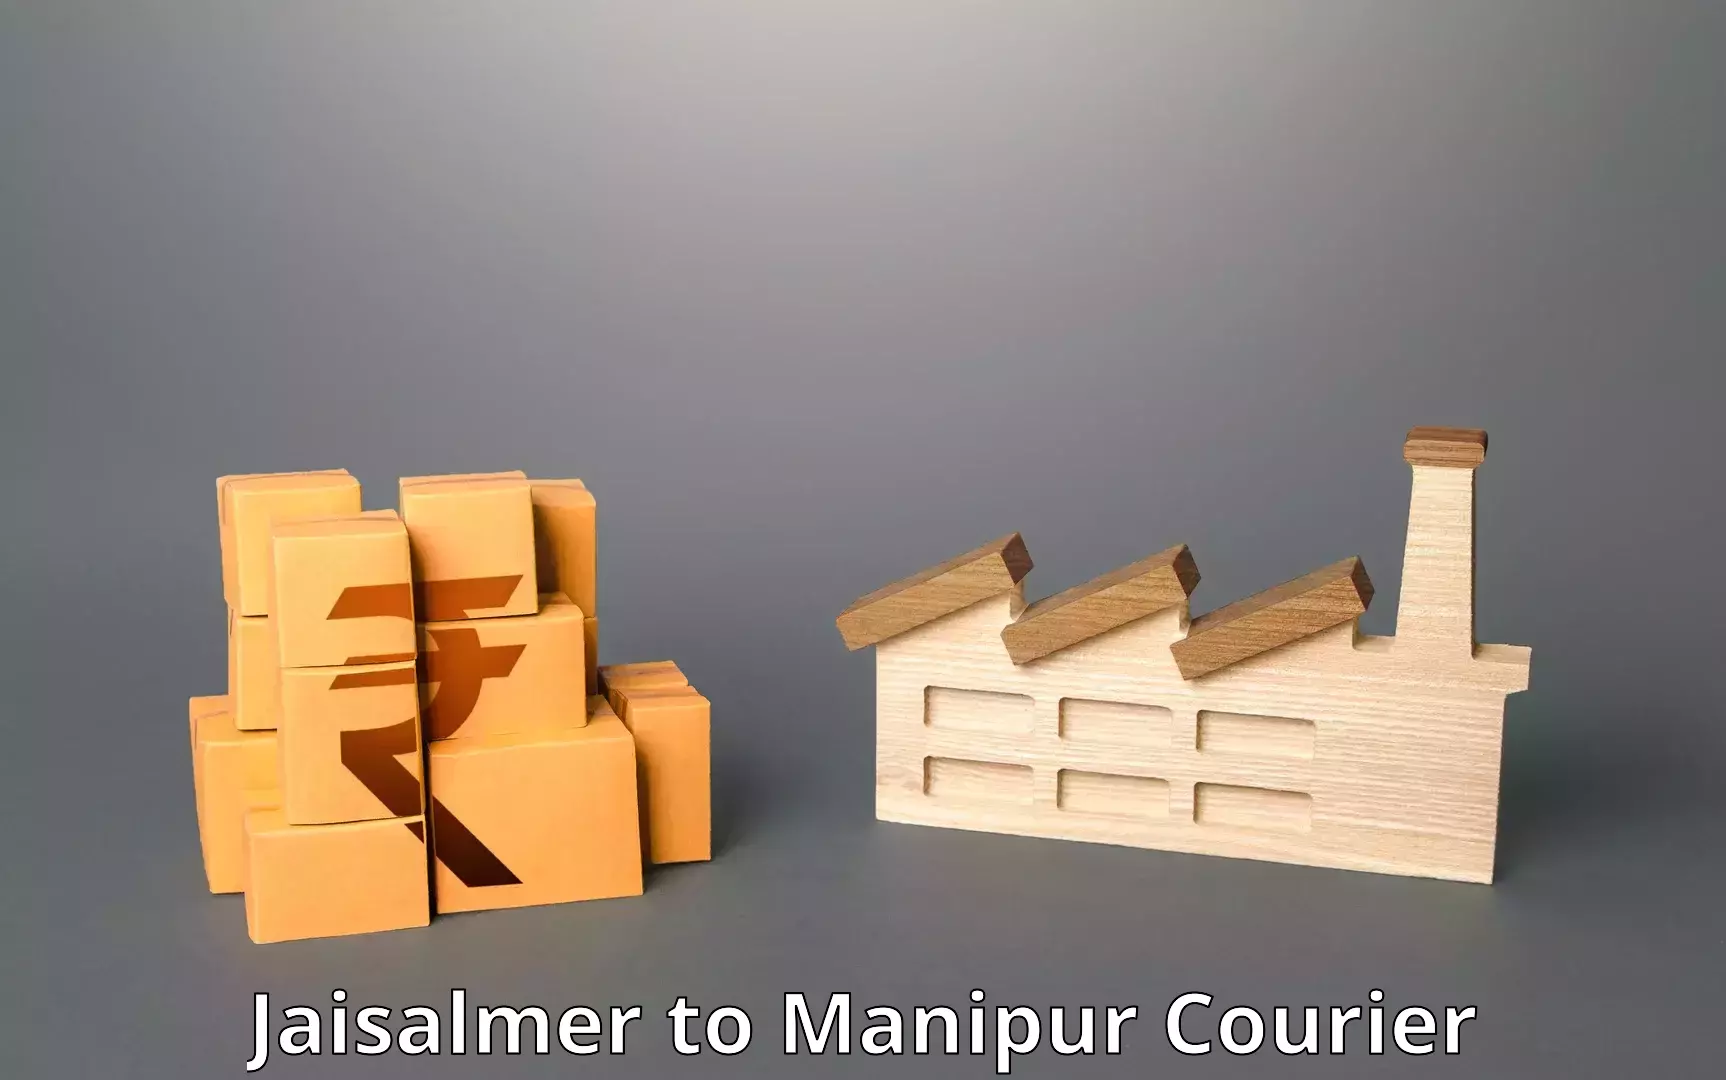 User-friendly courier app Jaisalmer to Manipur